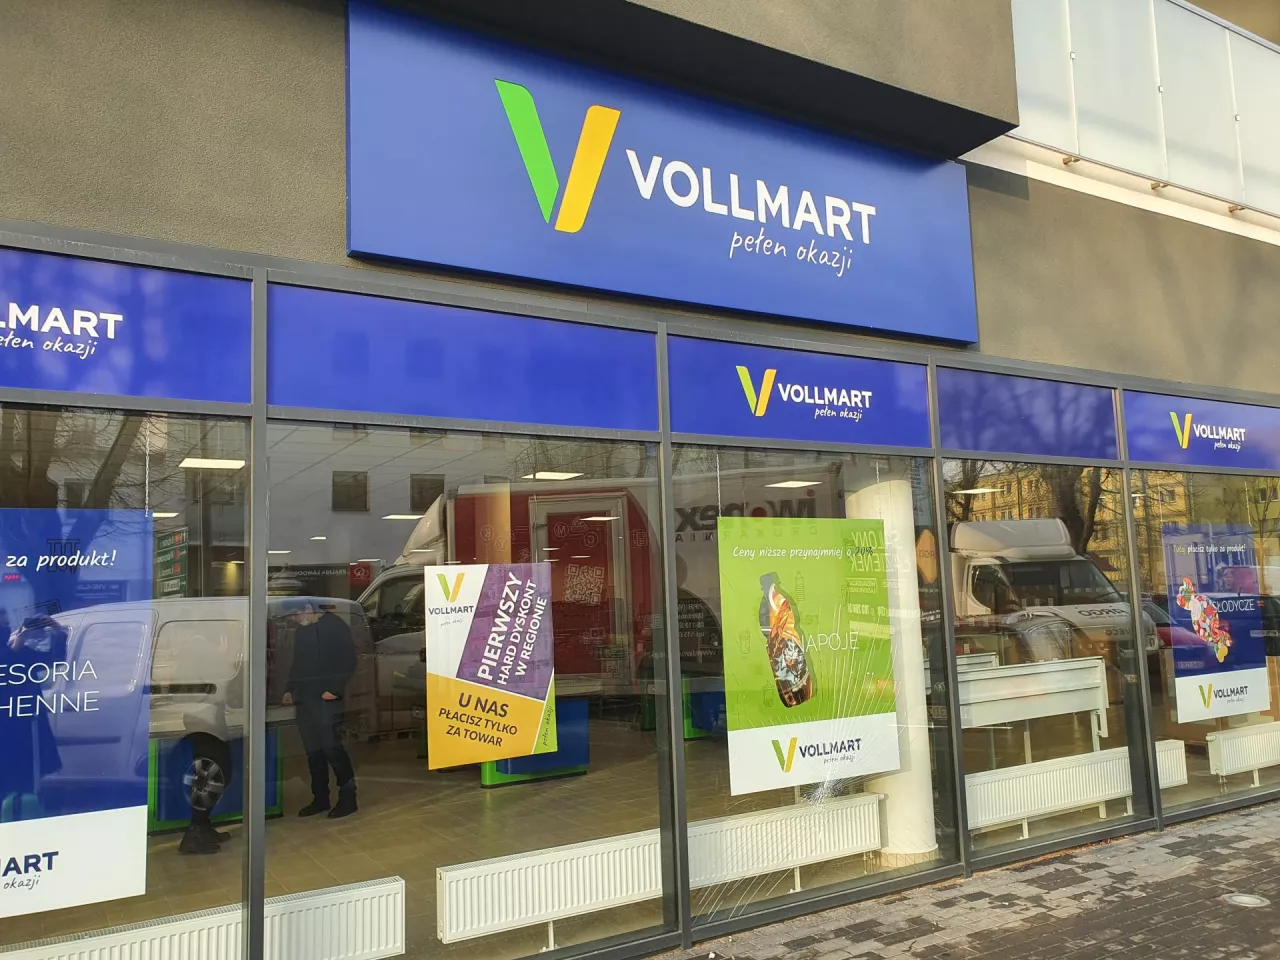 Vollmart w Siedlcach (fot. wiadomoscihandlowe.pl)